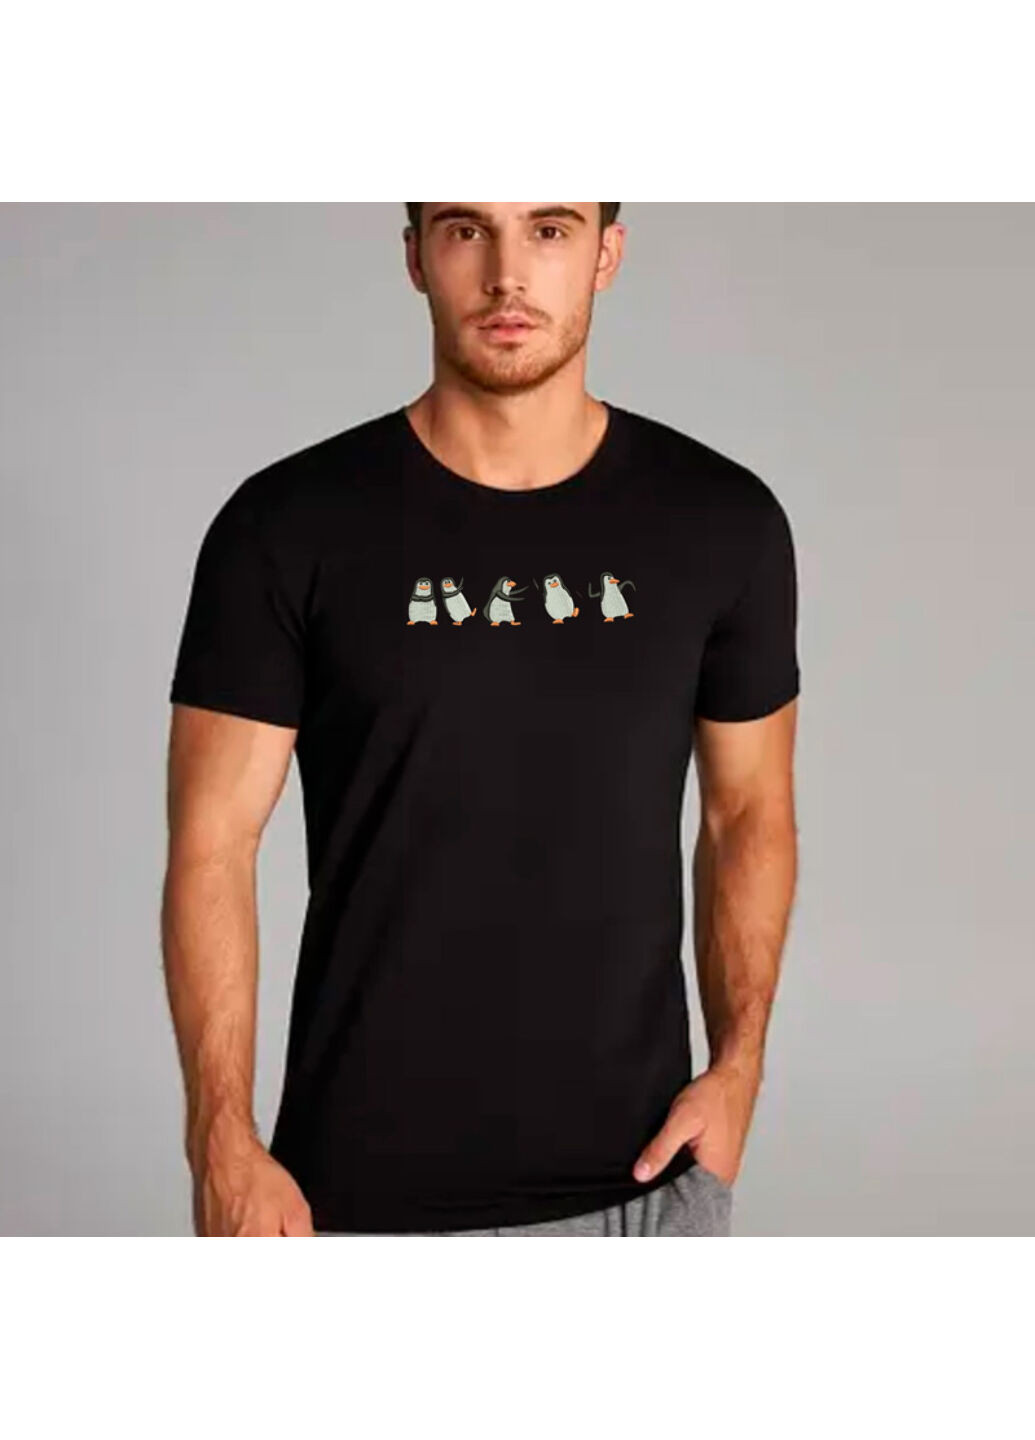 Черная футболка с вышивкой пингвинов 01-2 мужская черный s No Brand